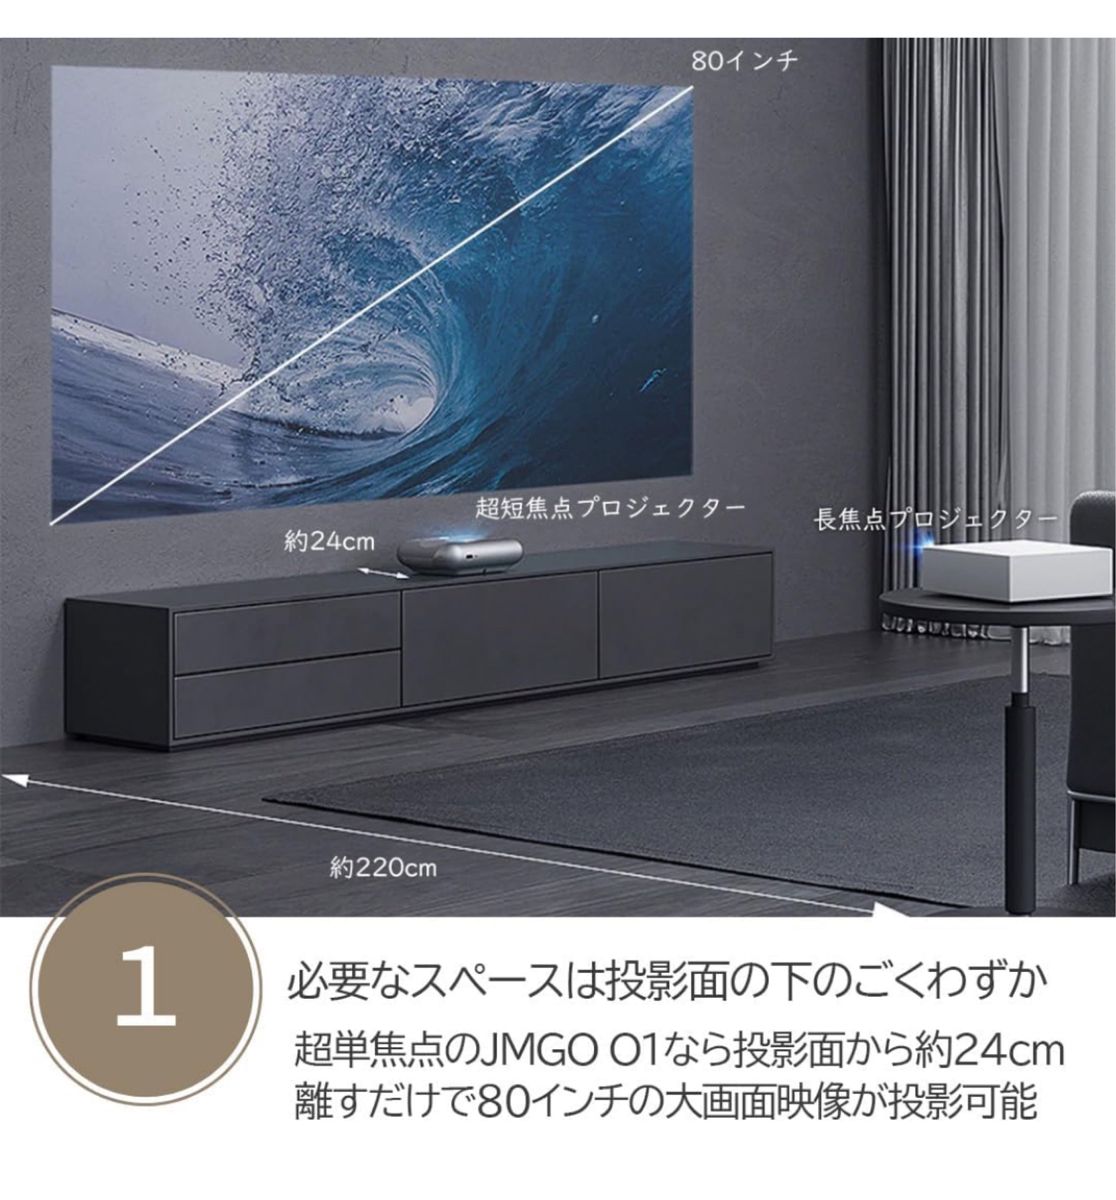 JMGO O1 超短焦点プロジェクター 1080p 800ANSIルーメン Dynaudio 7Wスピーカー2基